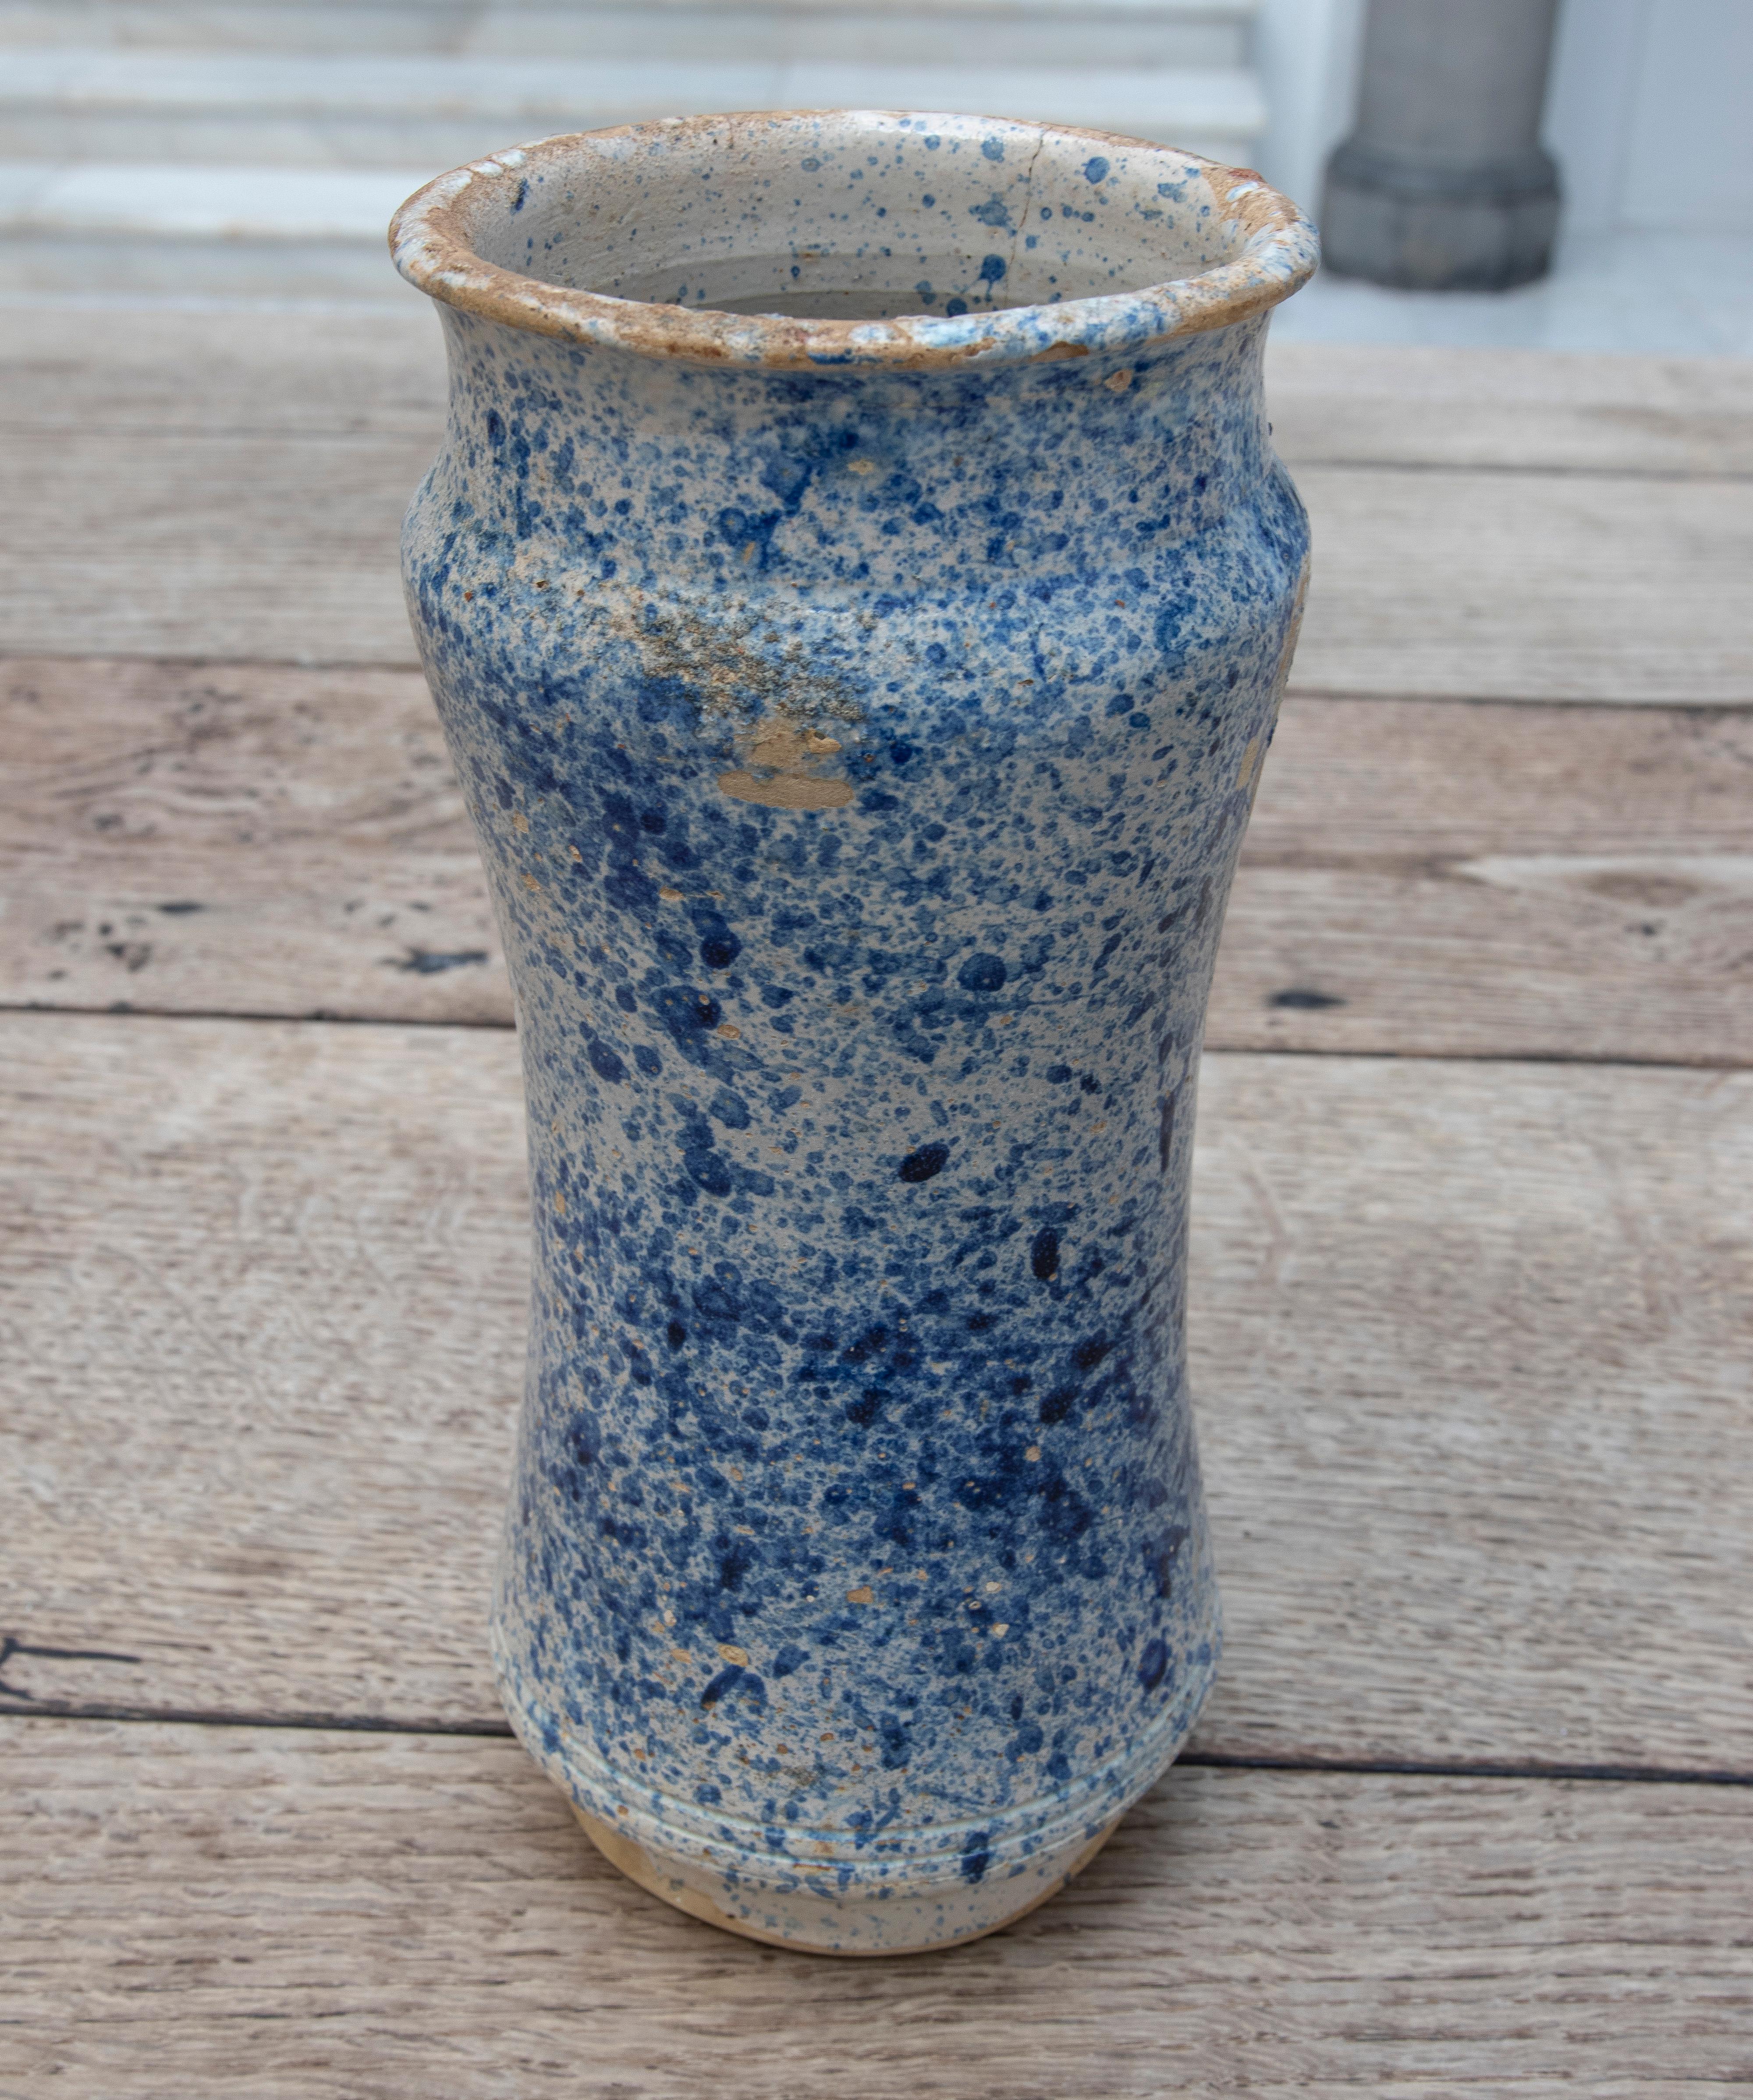 Spanischer Talavera-Apothekenkrug aus blau glasierter Keramik des 17. Jahrhunderts.